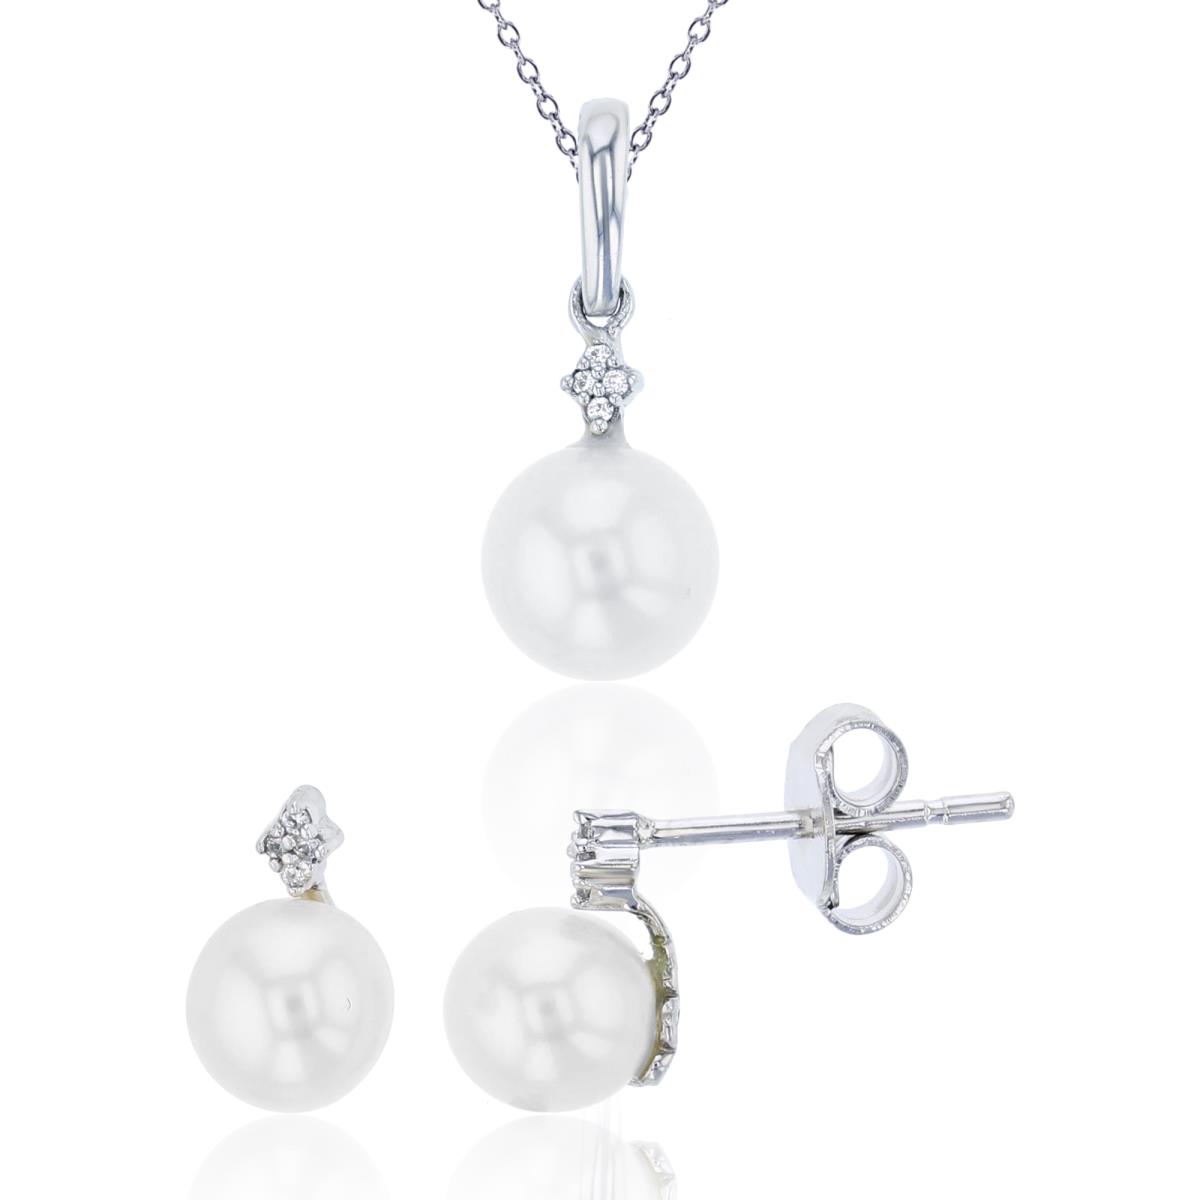 10K White Gold 0.03 CTTW Diamond & Rnd Pearl Pendant/Earring Set